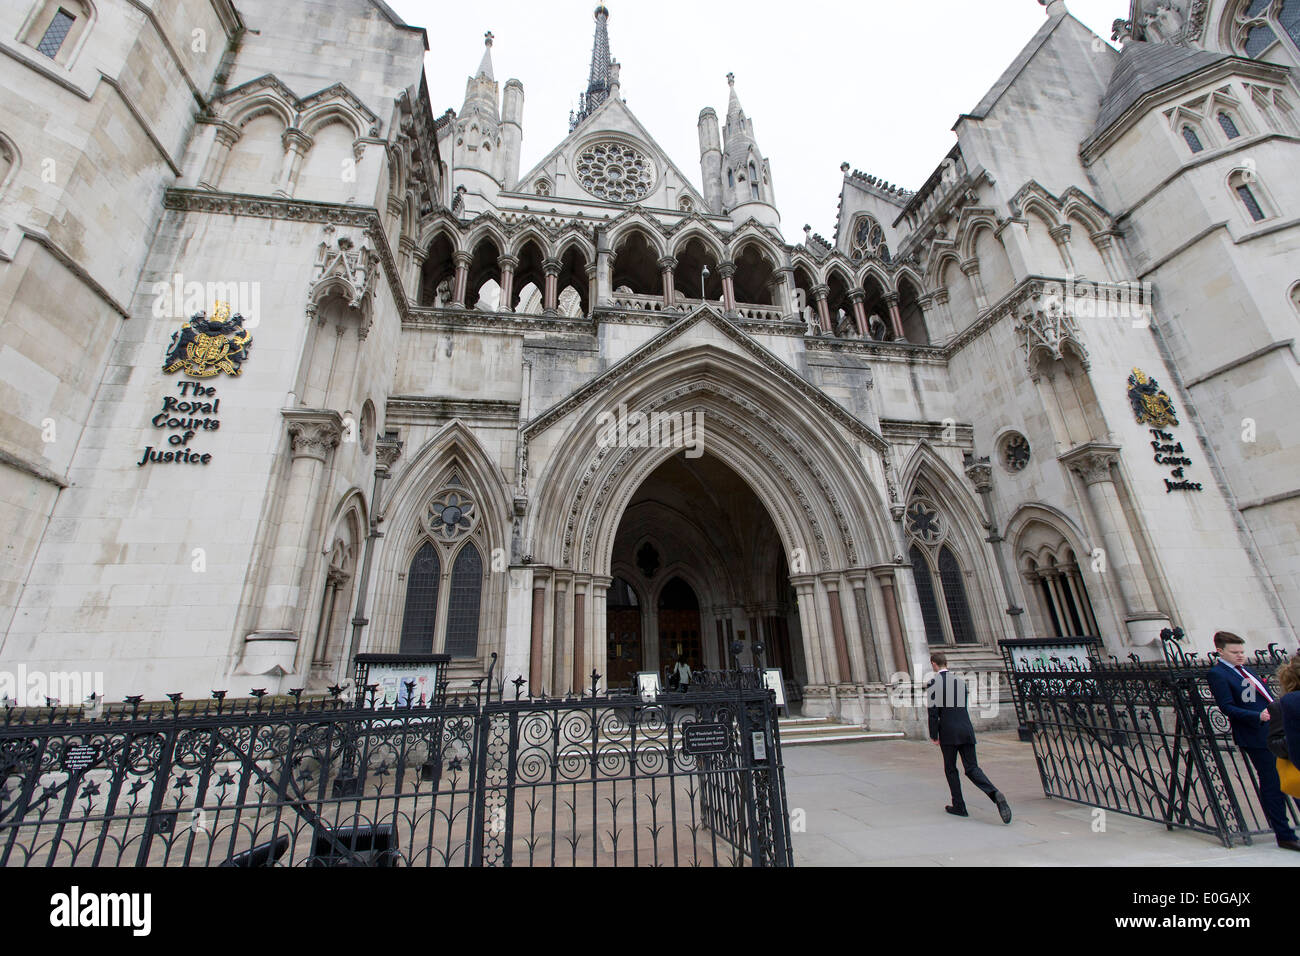 Reino Unido, Londres : una imagen muestra una vista general de GV las Cortes Reales de justicia en Londres. Foto de stock